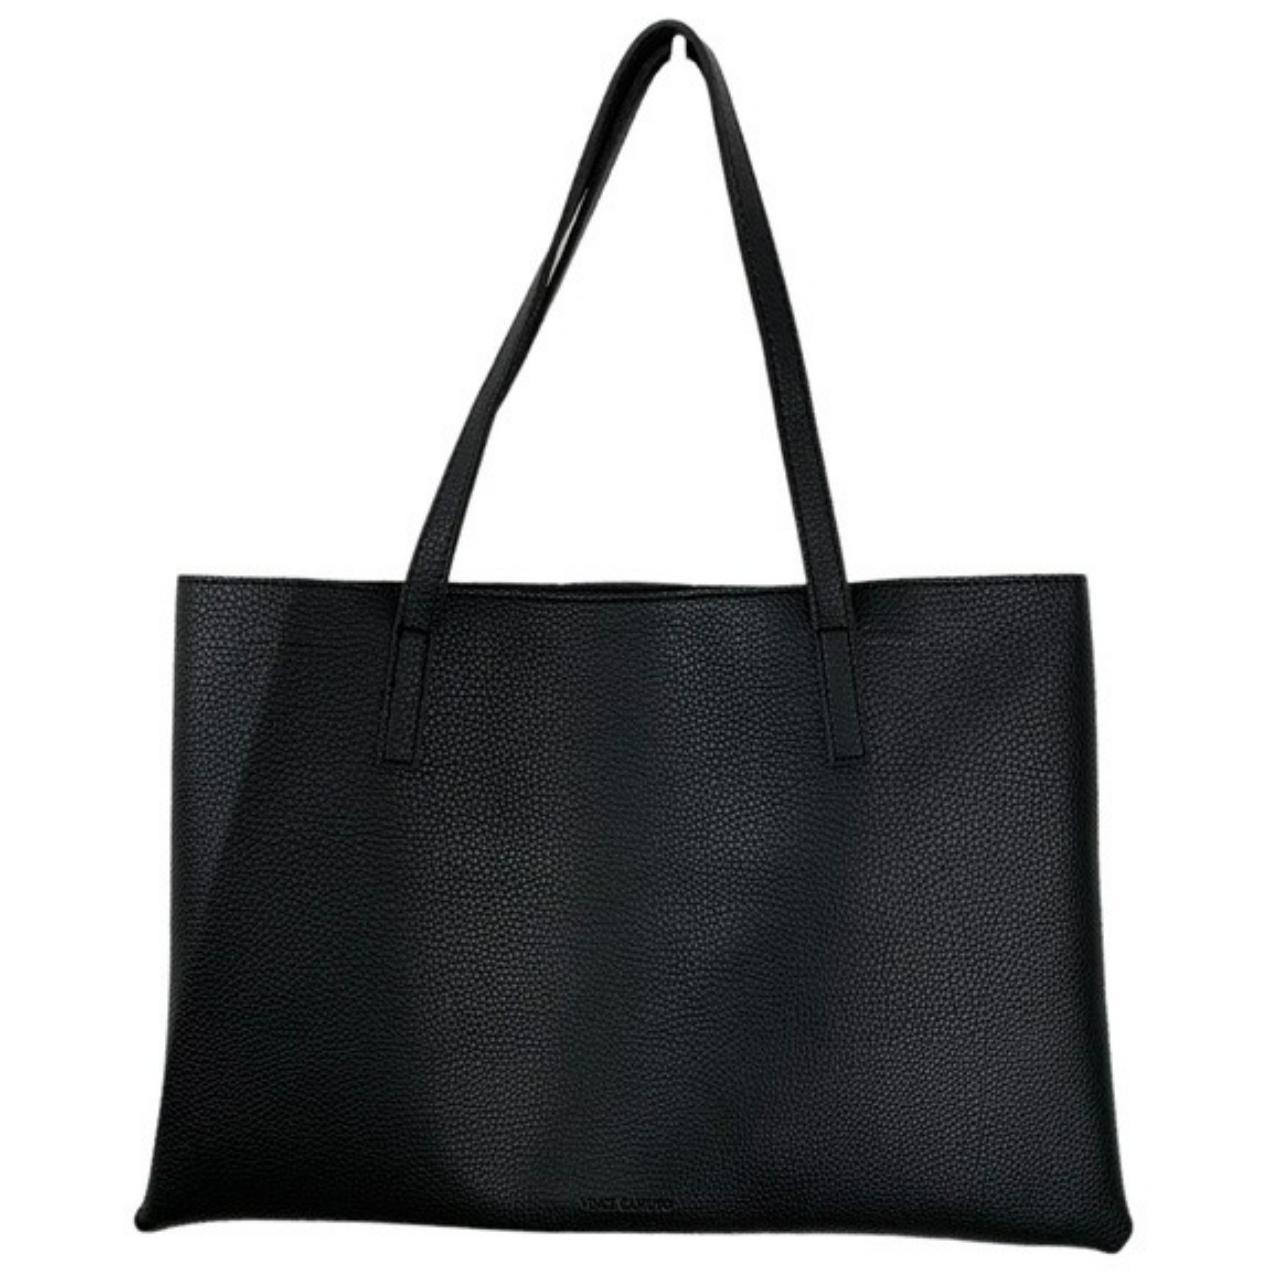 Vince Comuto Vegan Leather Bag Solid Black... - Depop